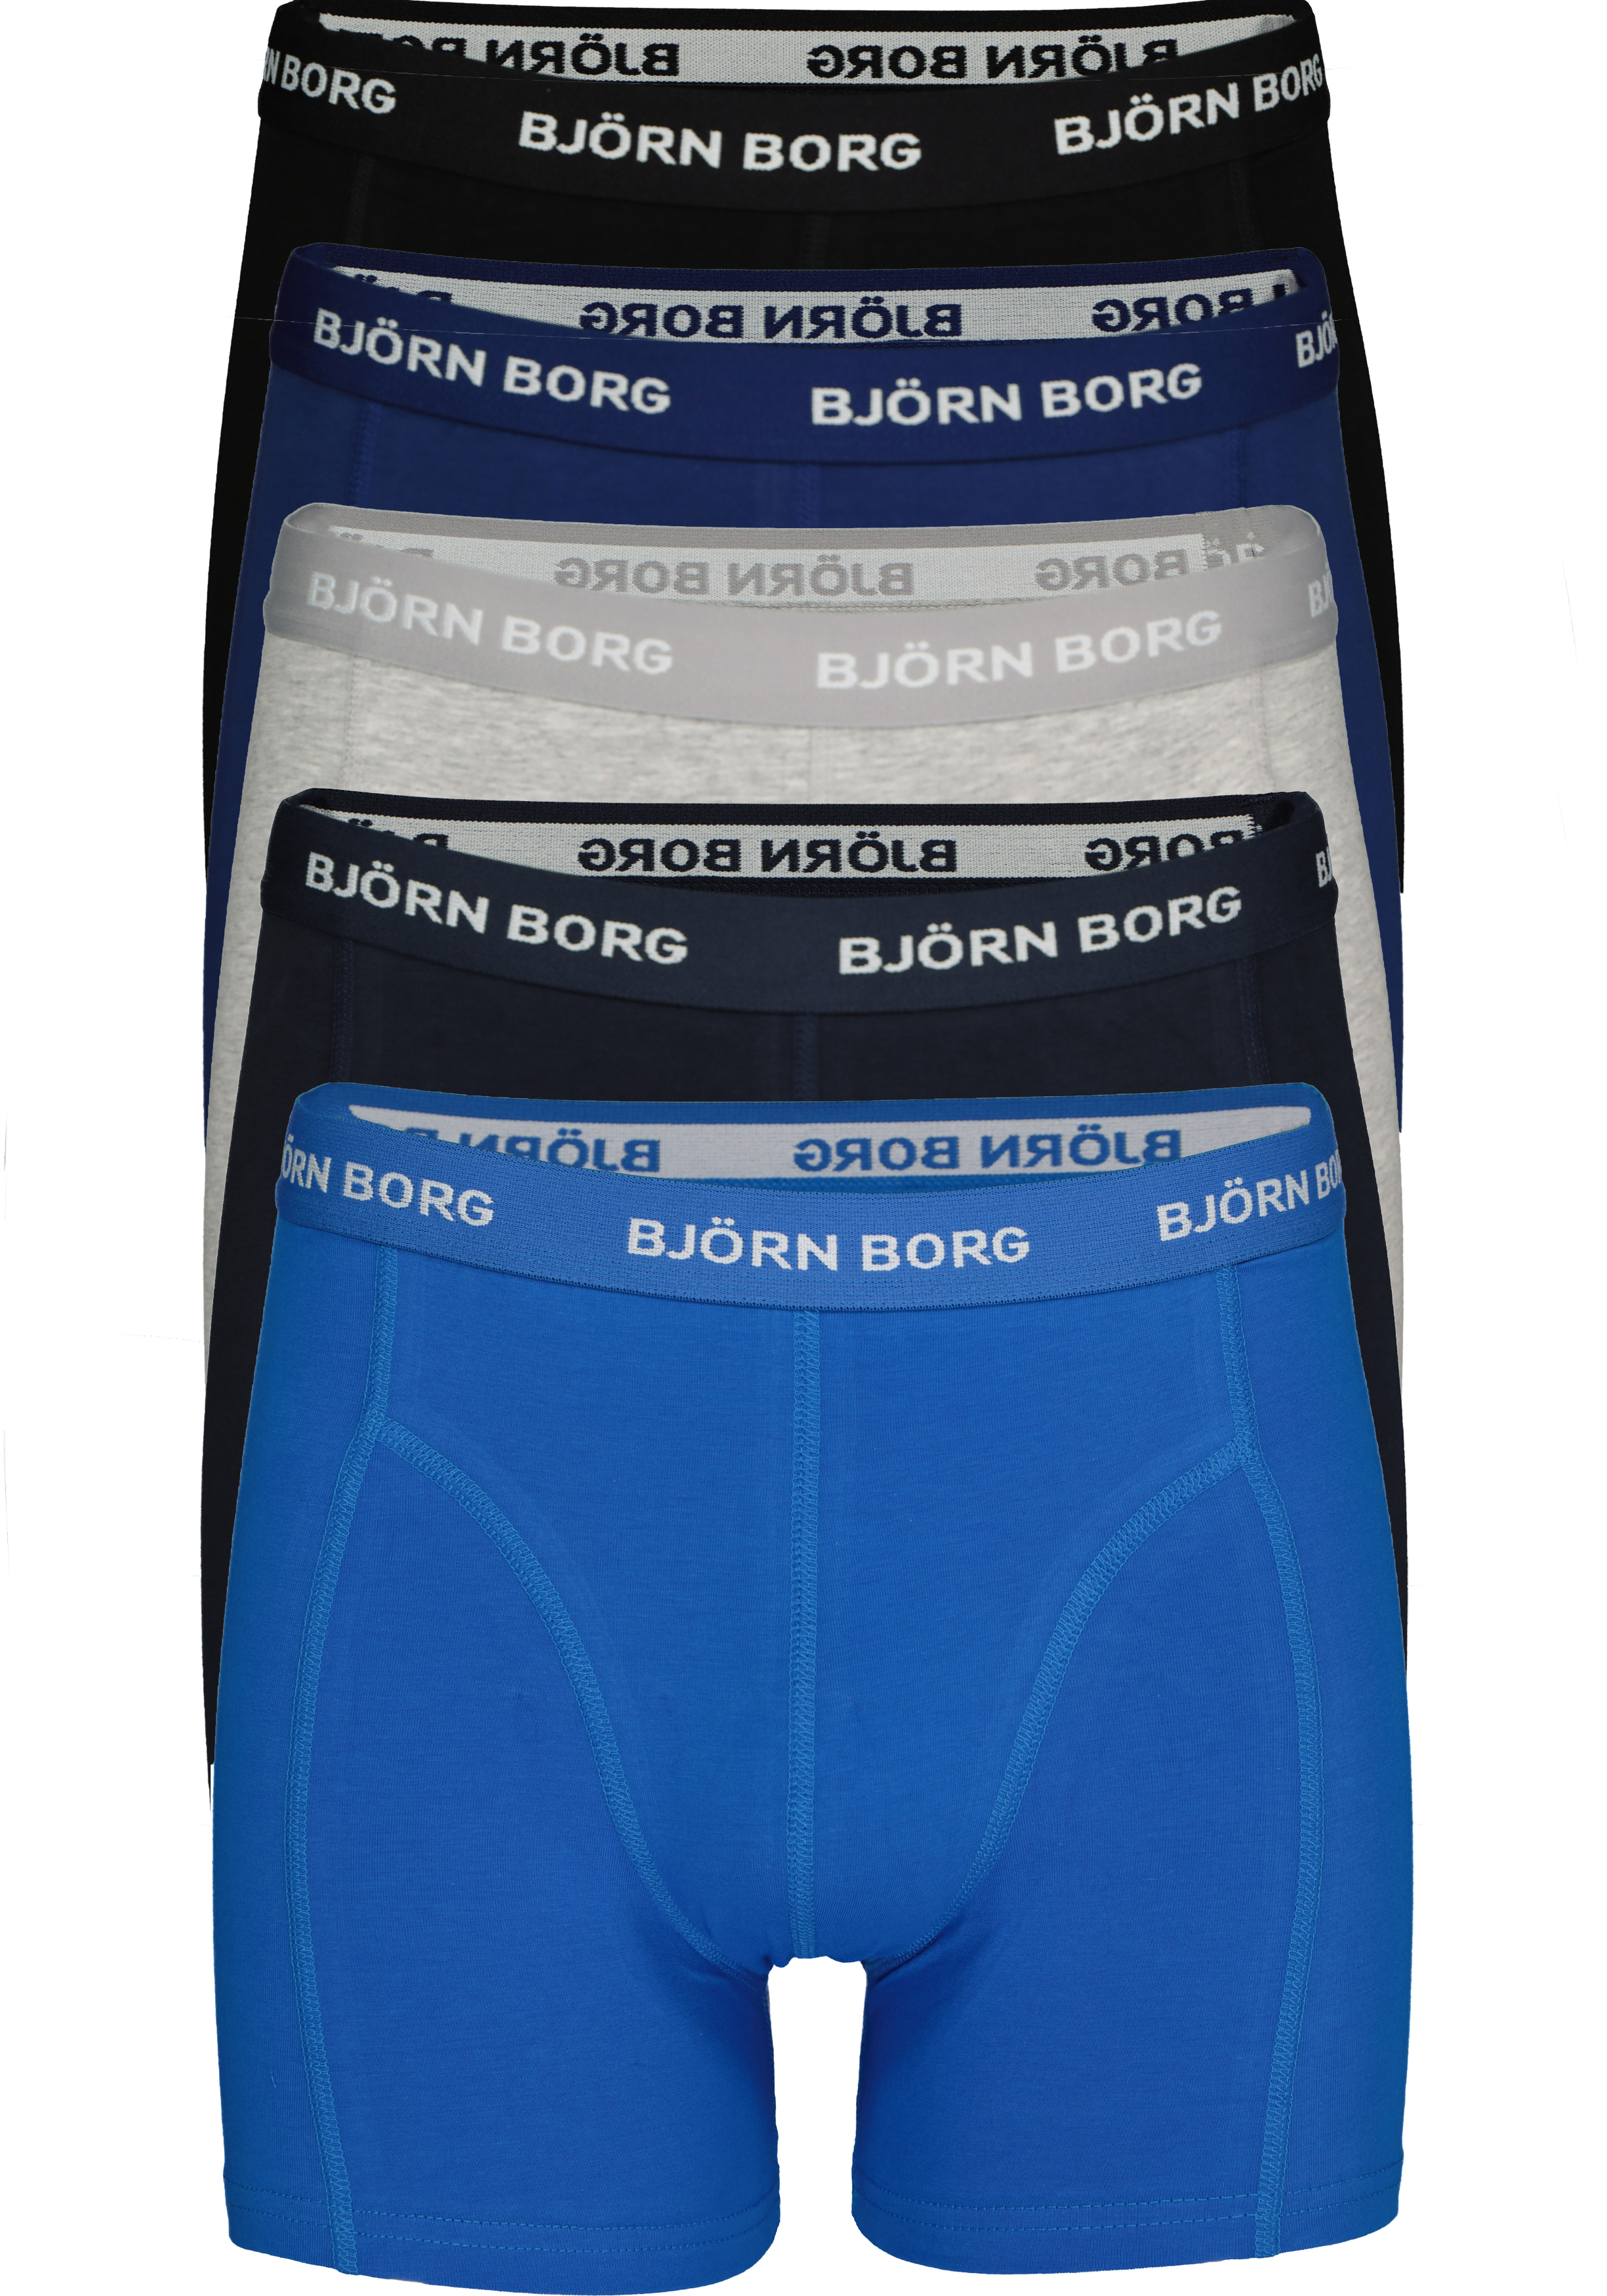 Bjorn Borg boxershorts (5-pack), heren boxers normale lengte,... - de nieuwste voorjaarsmode